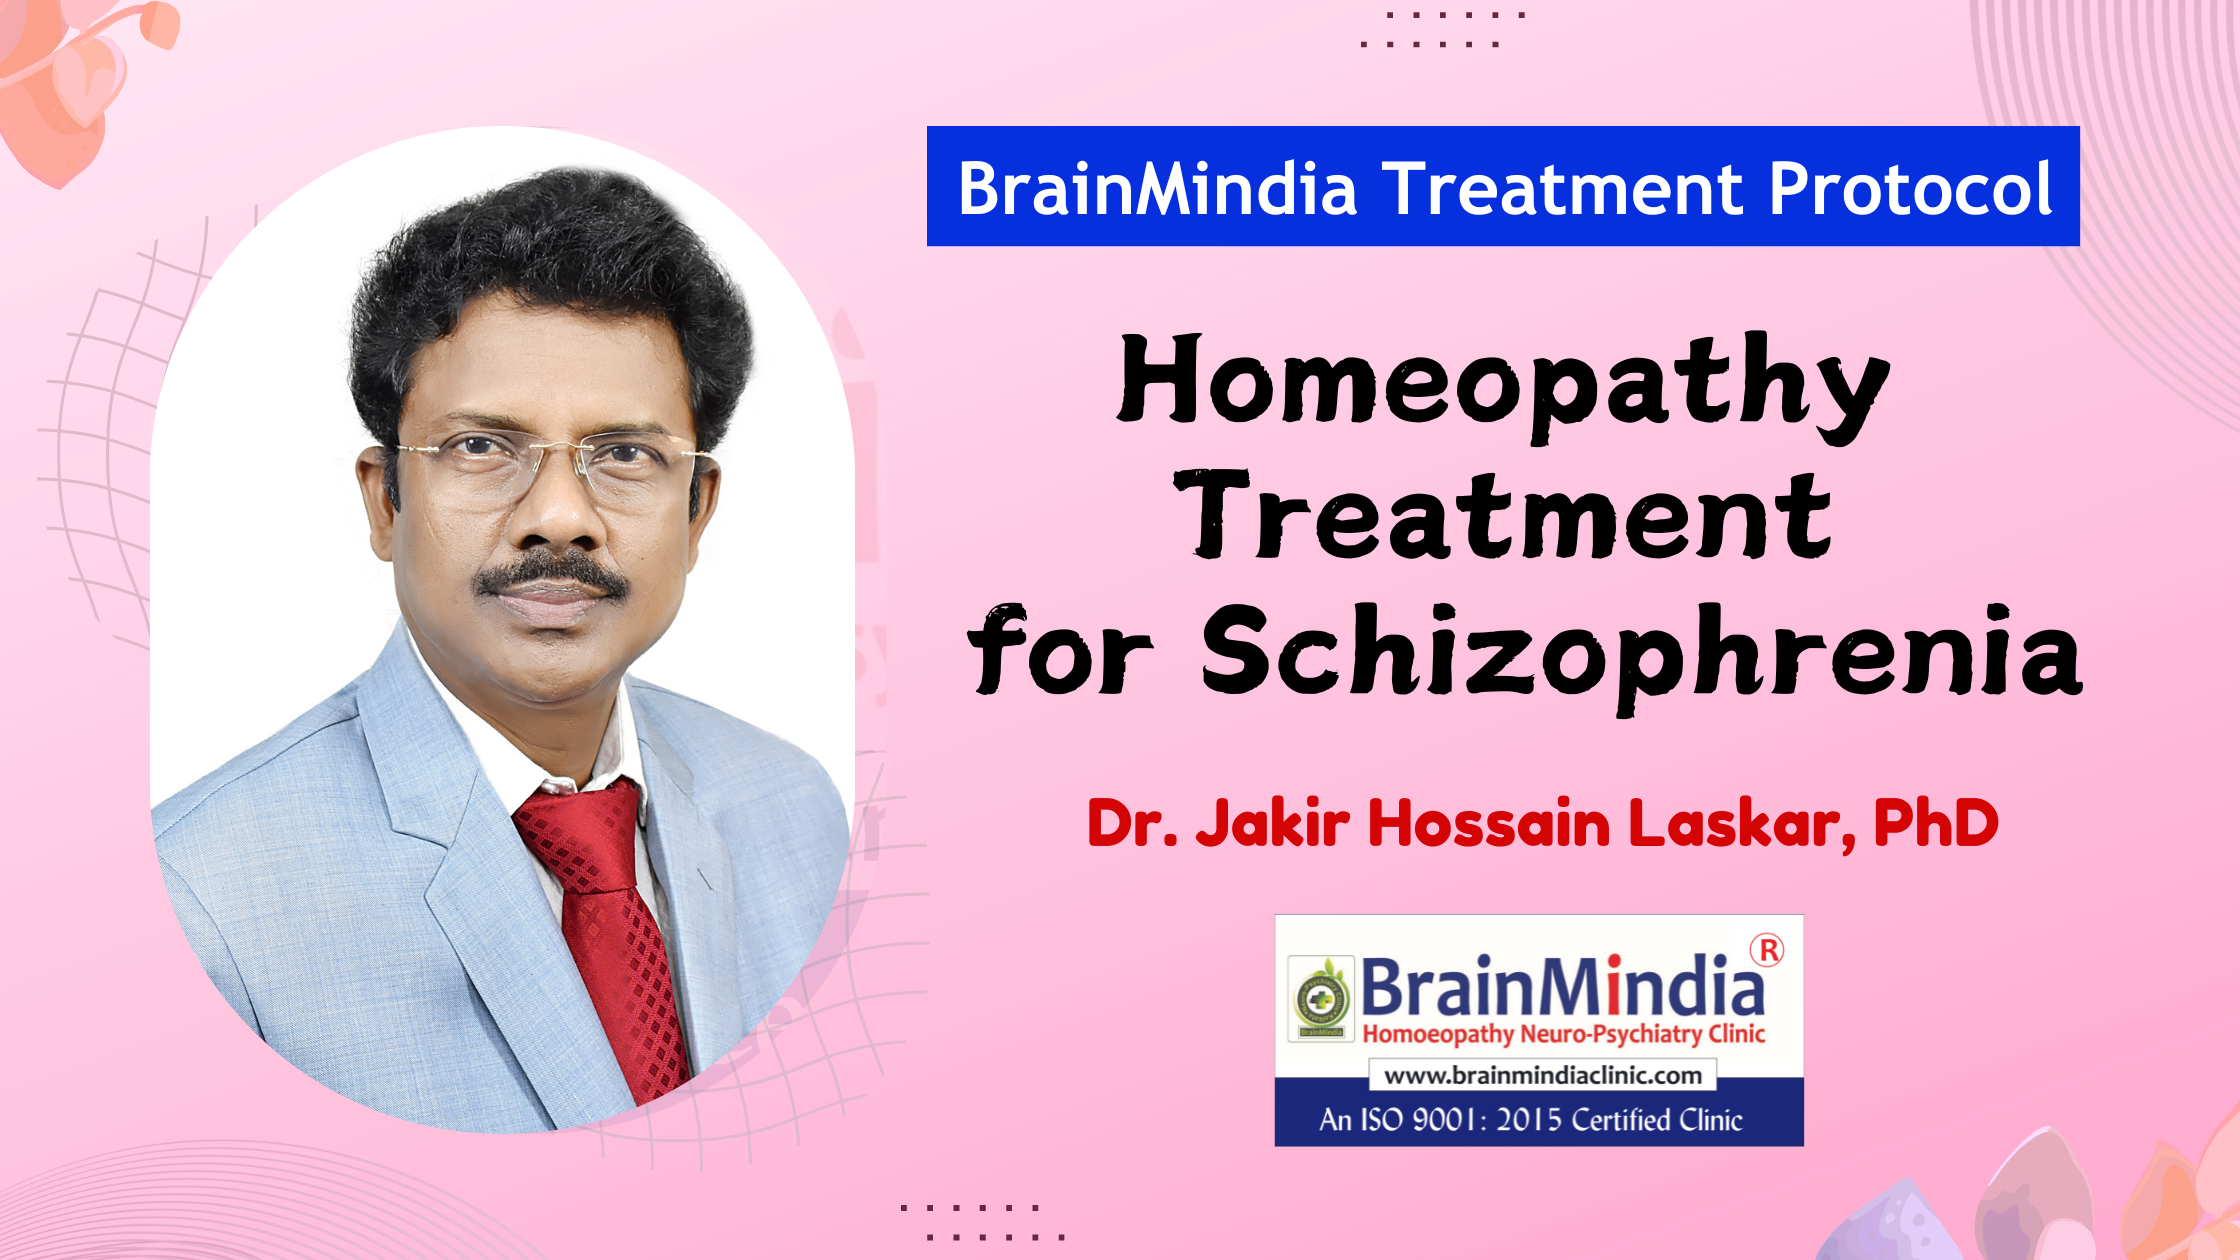 Homeopathic Treatment of Schizophrenia through BrainMindia Protocol